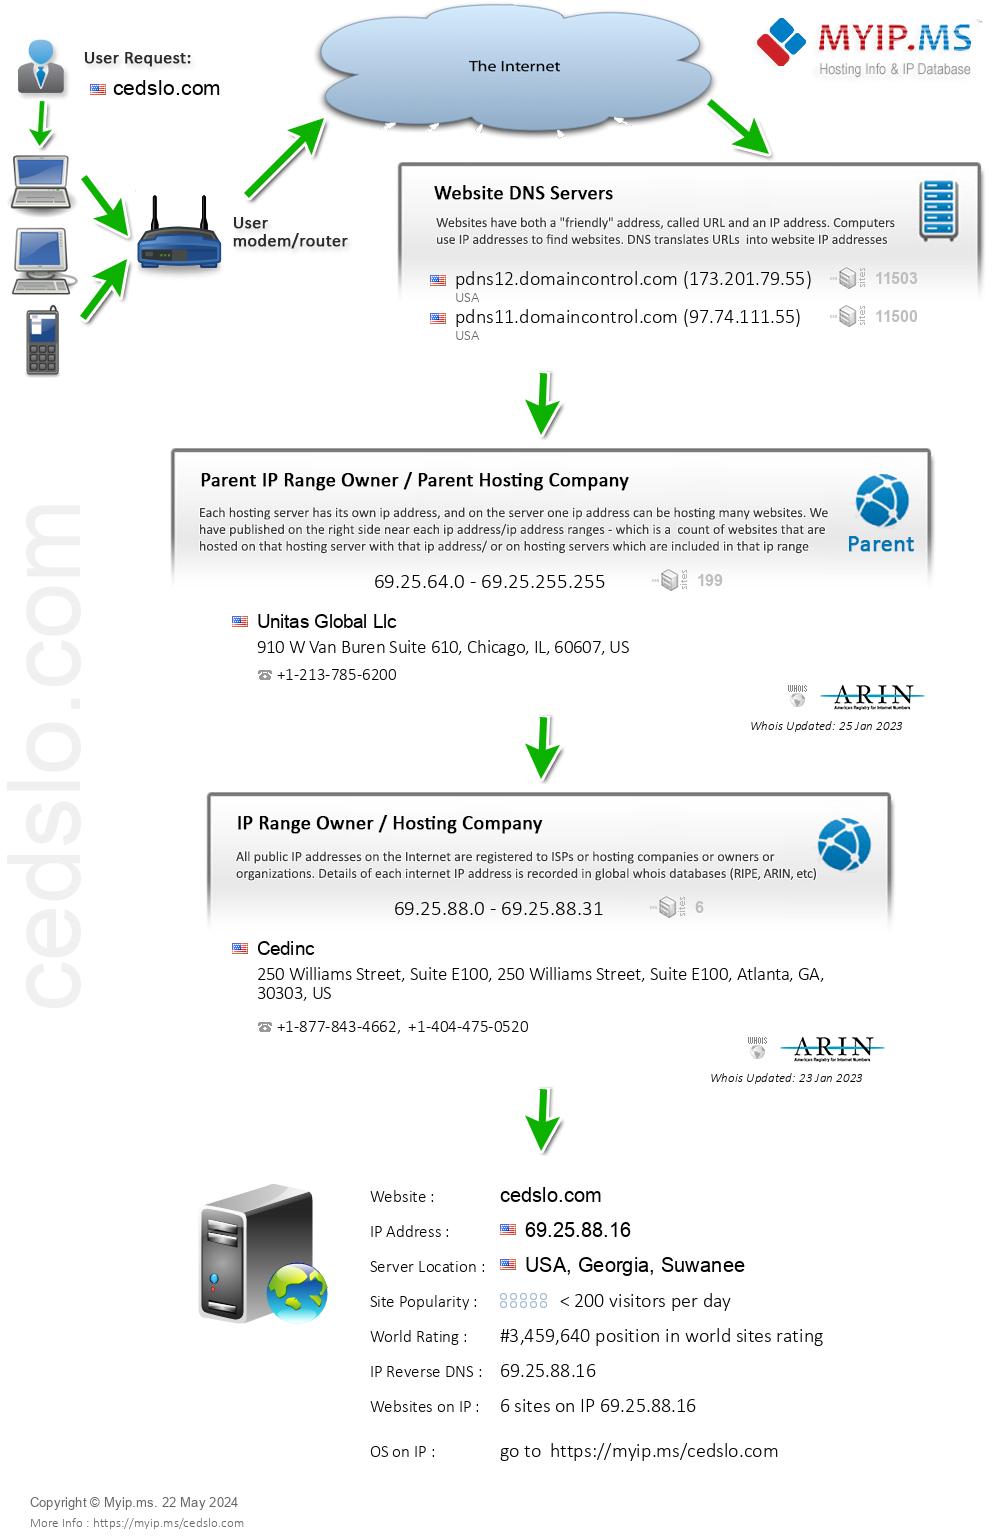 Cedslo.com - Website Hosting Visual IP Diagram